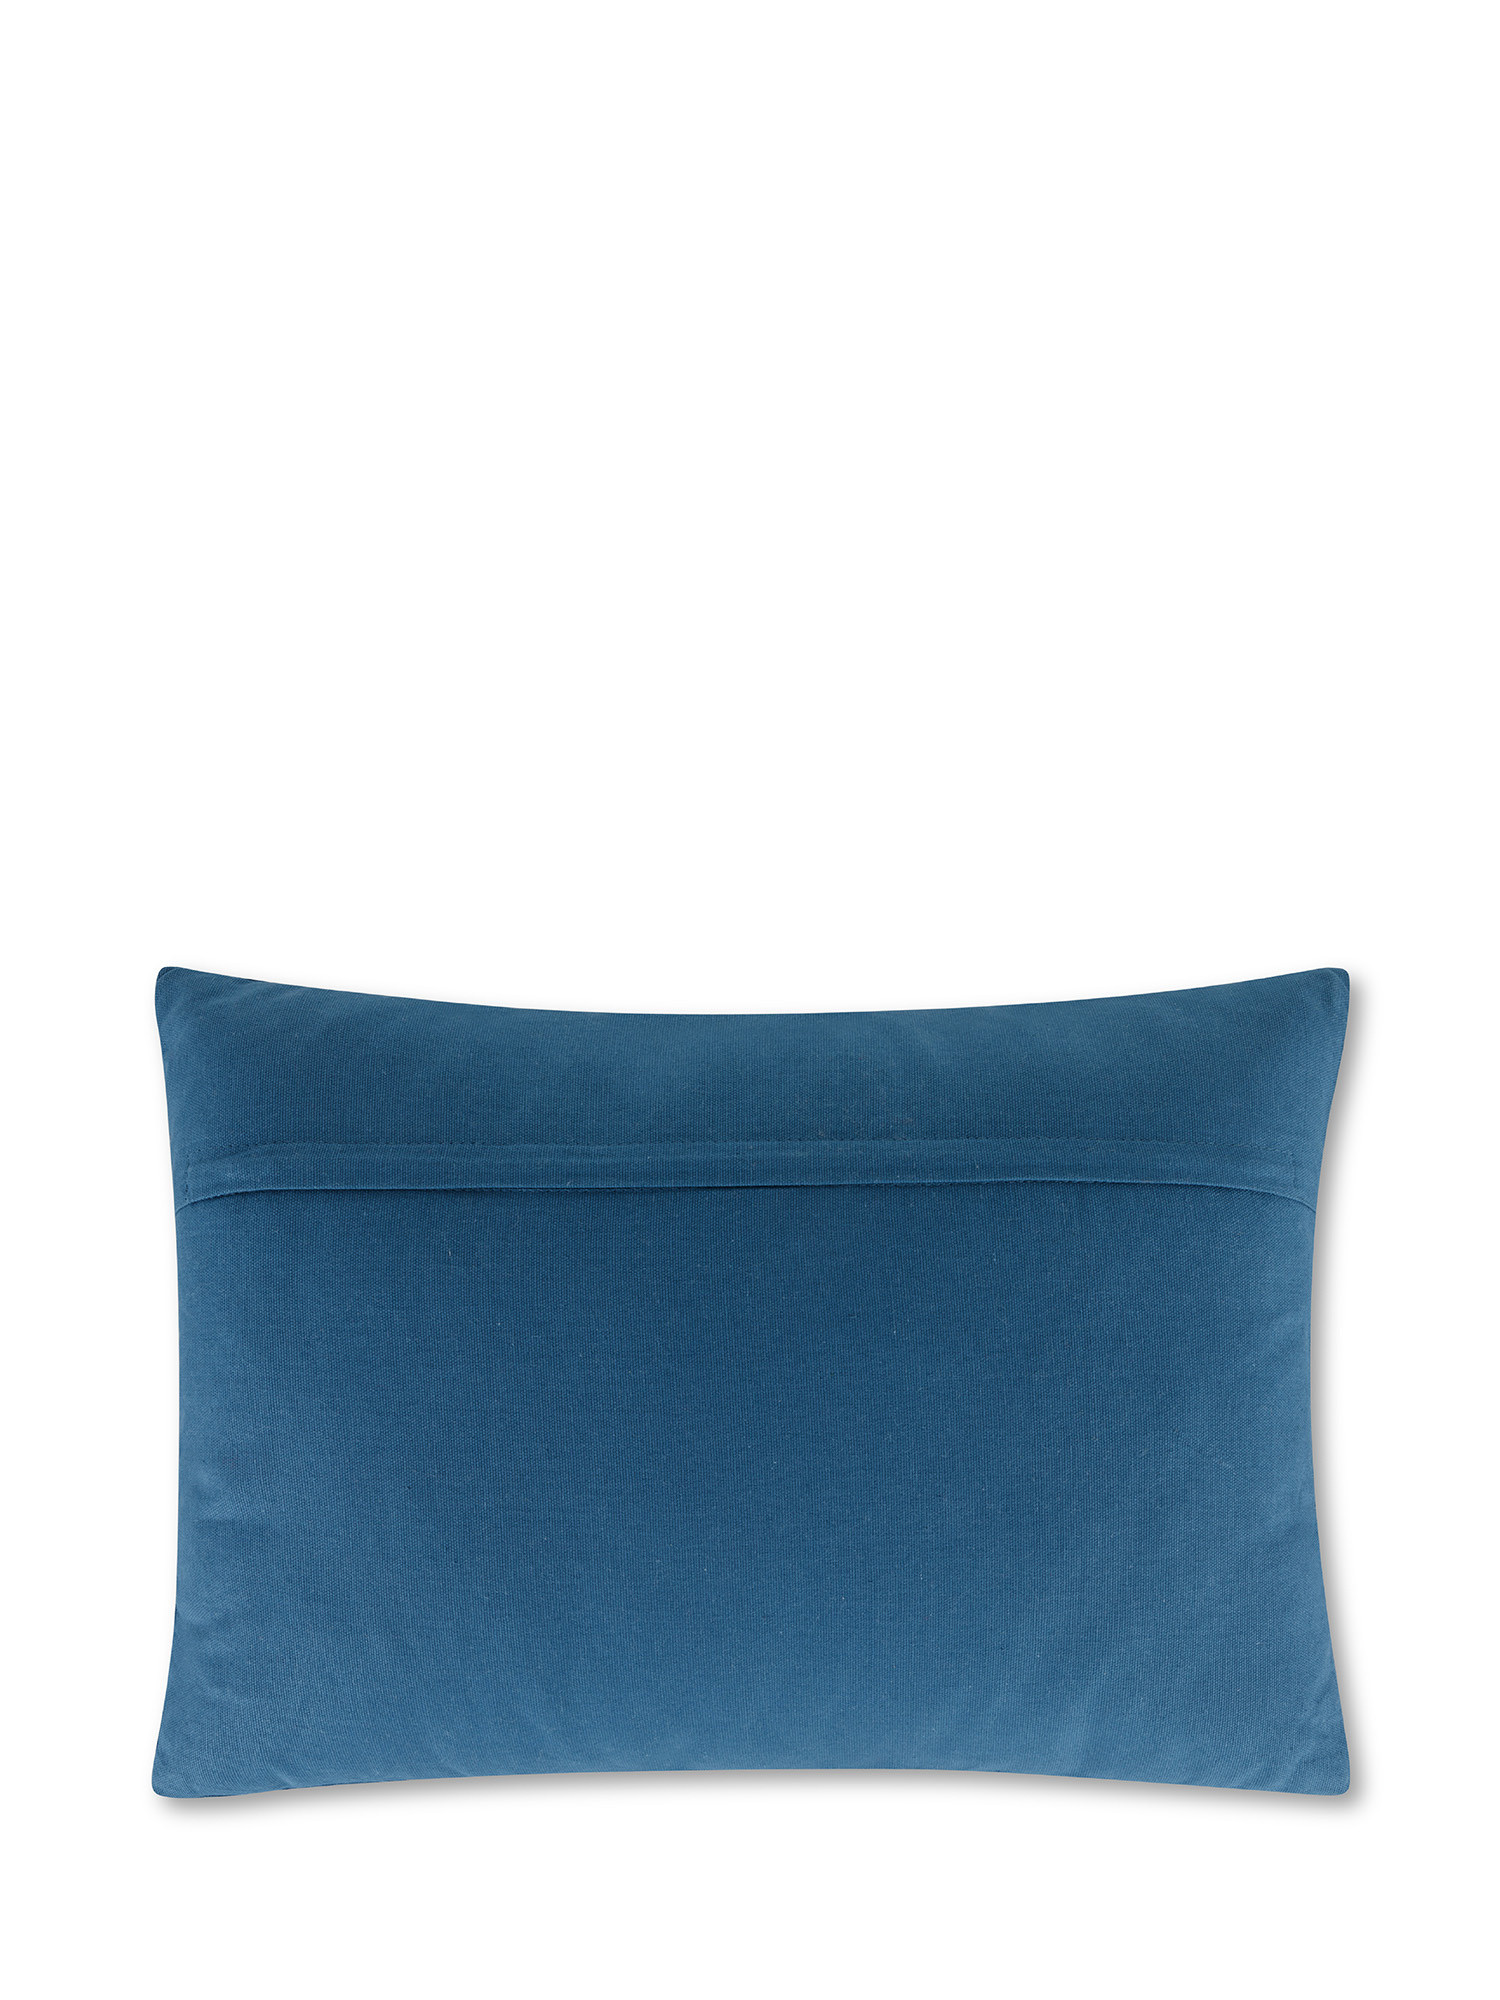 Cuscino in tessuto ricamato con fiori 35x50 cm, Azzurro scuro, large image number 1